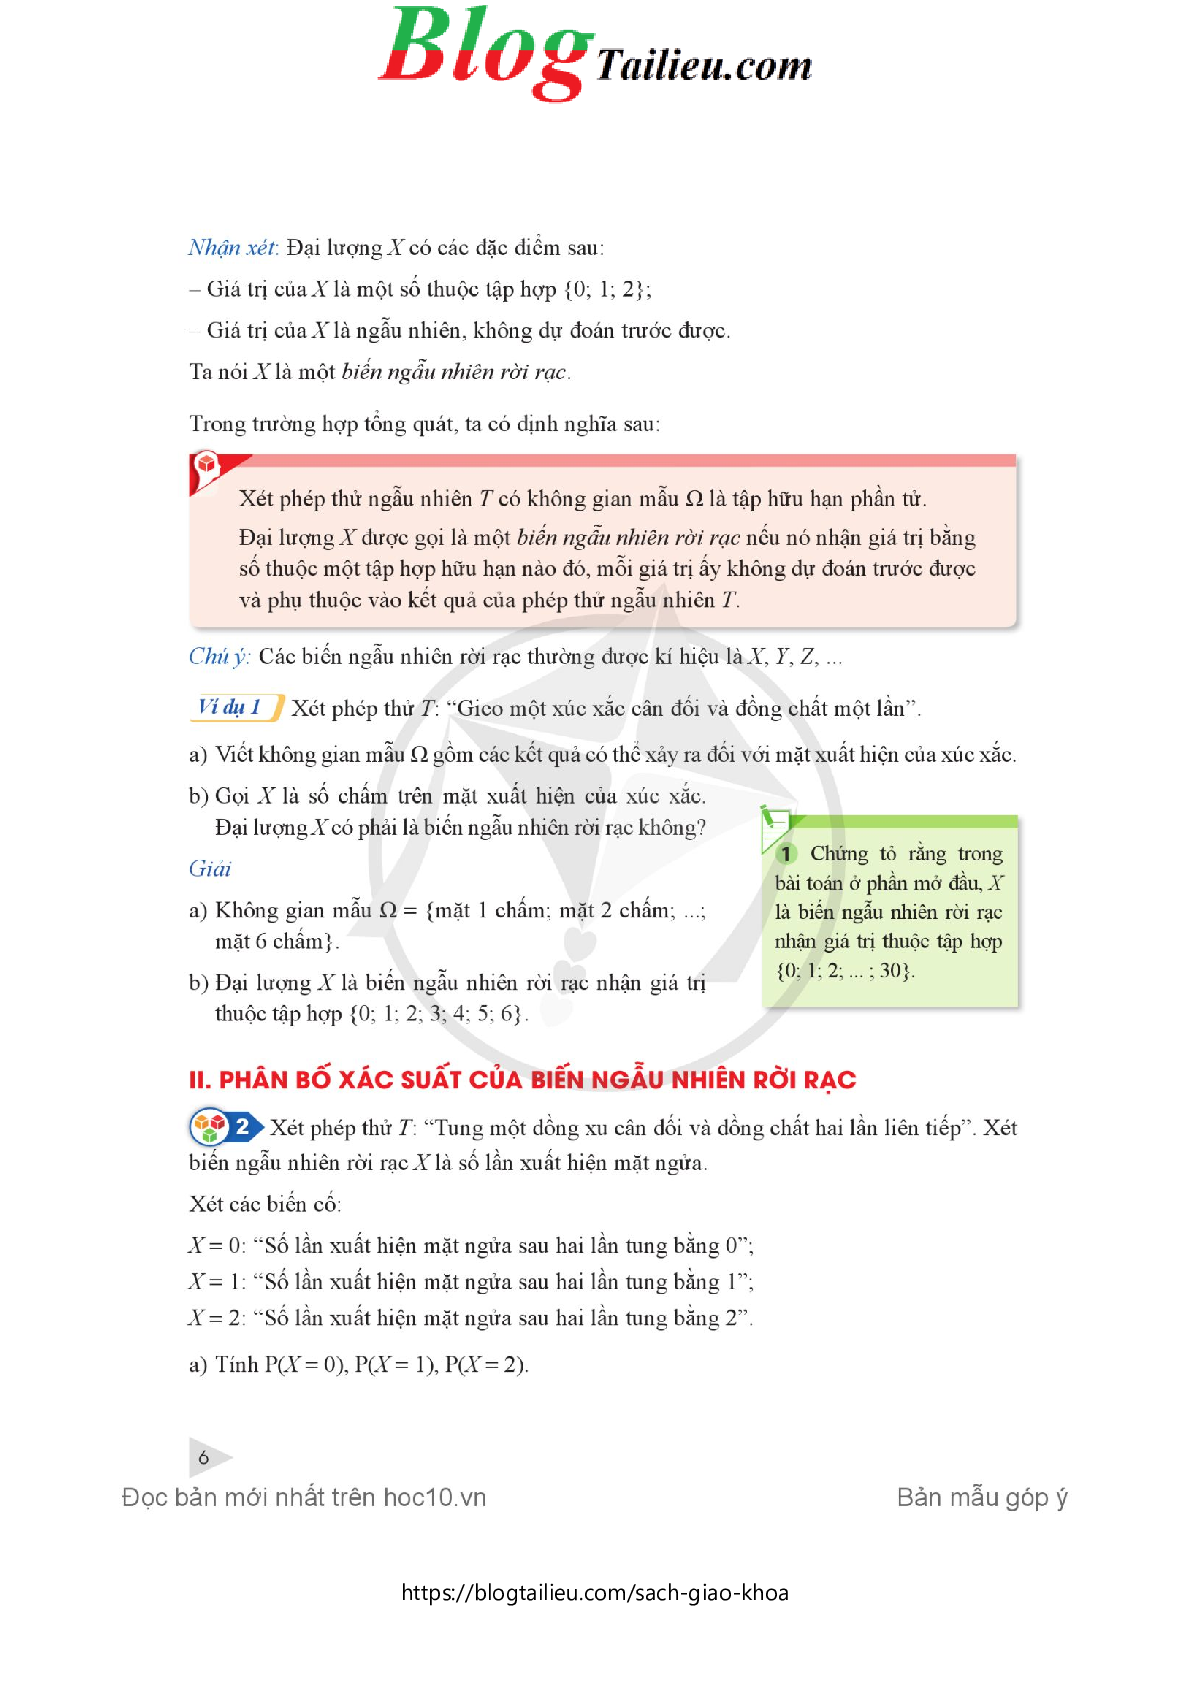 Chuyên đề học tập Toán 12 Cánh diều pdf (trang 8)